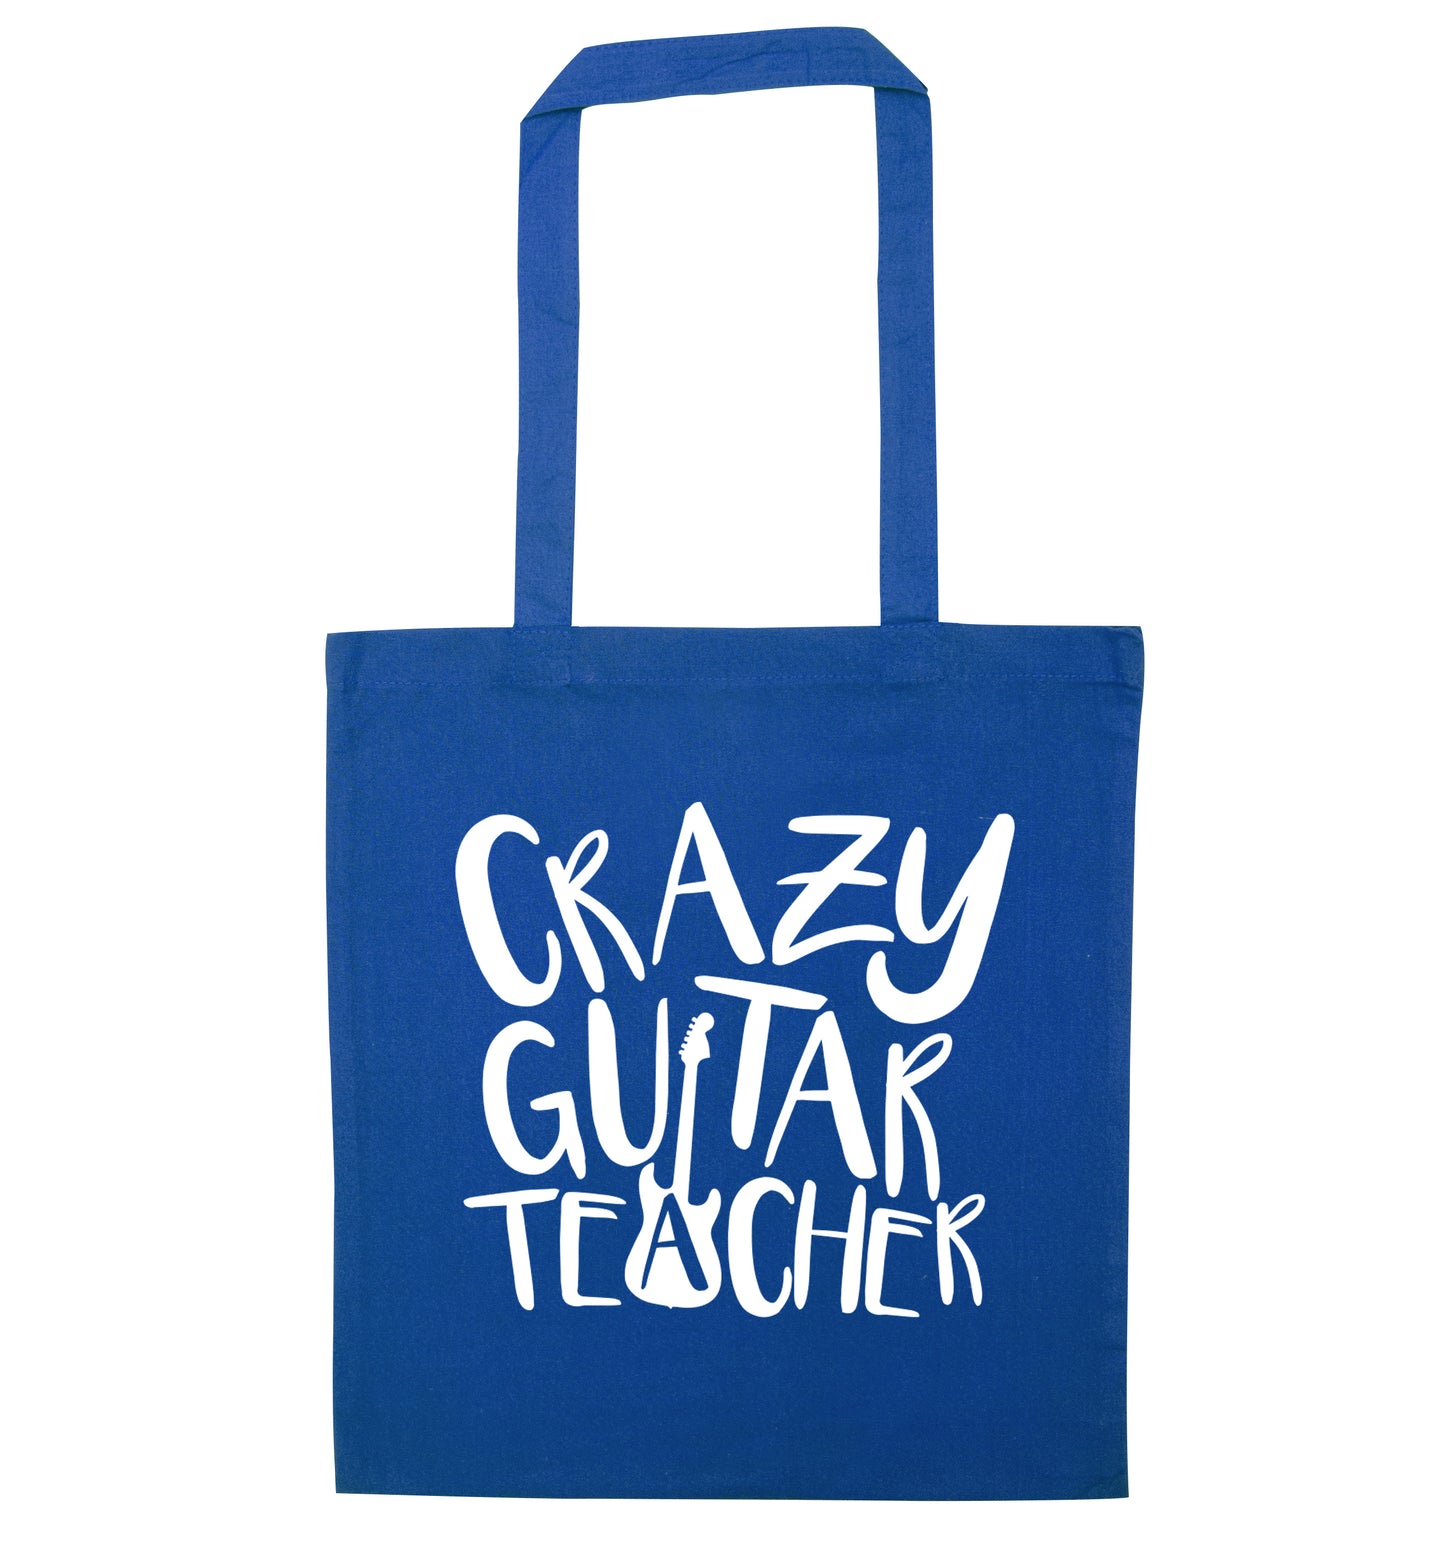 Crazy guitar teacher blue tote bag